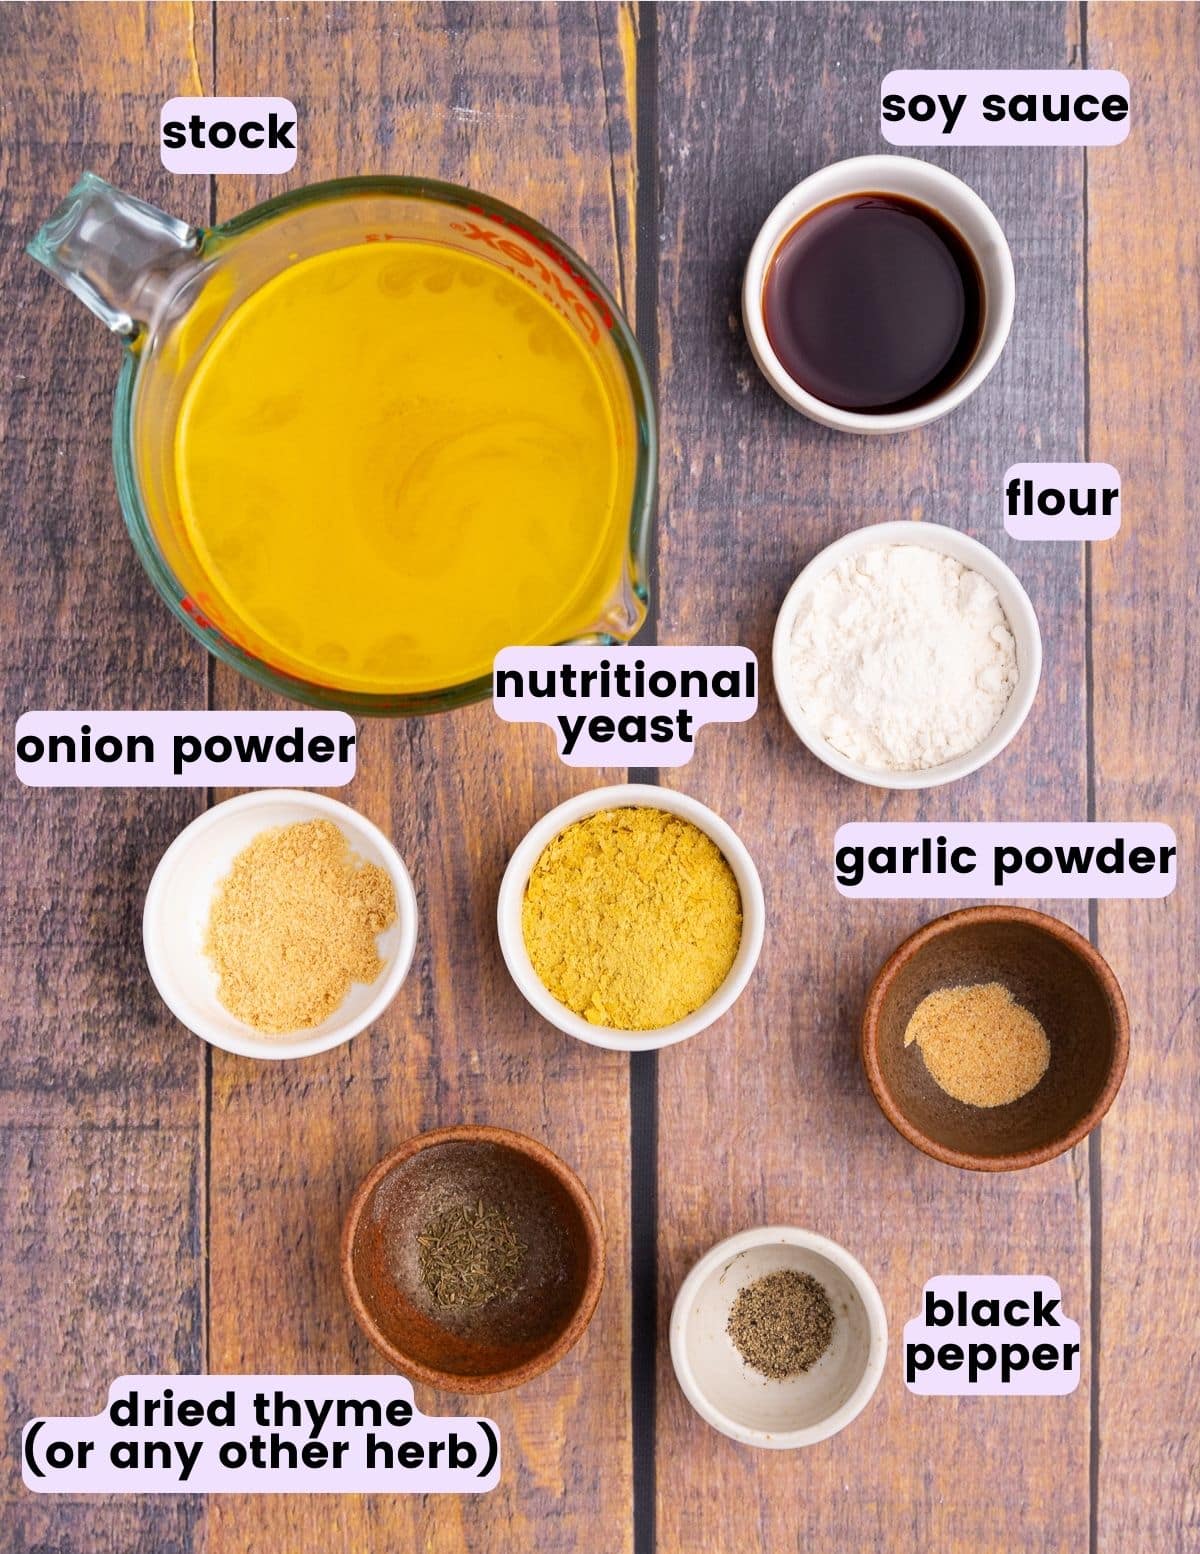 stock, soy sauce, flour, onion powder, garlic powder, nutritional yeast, thyme, black pepper 